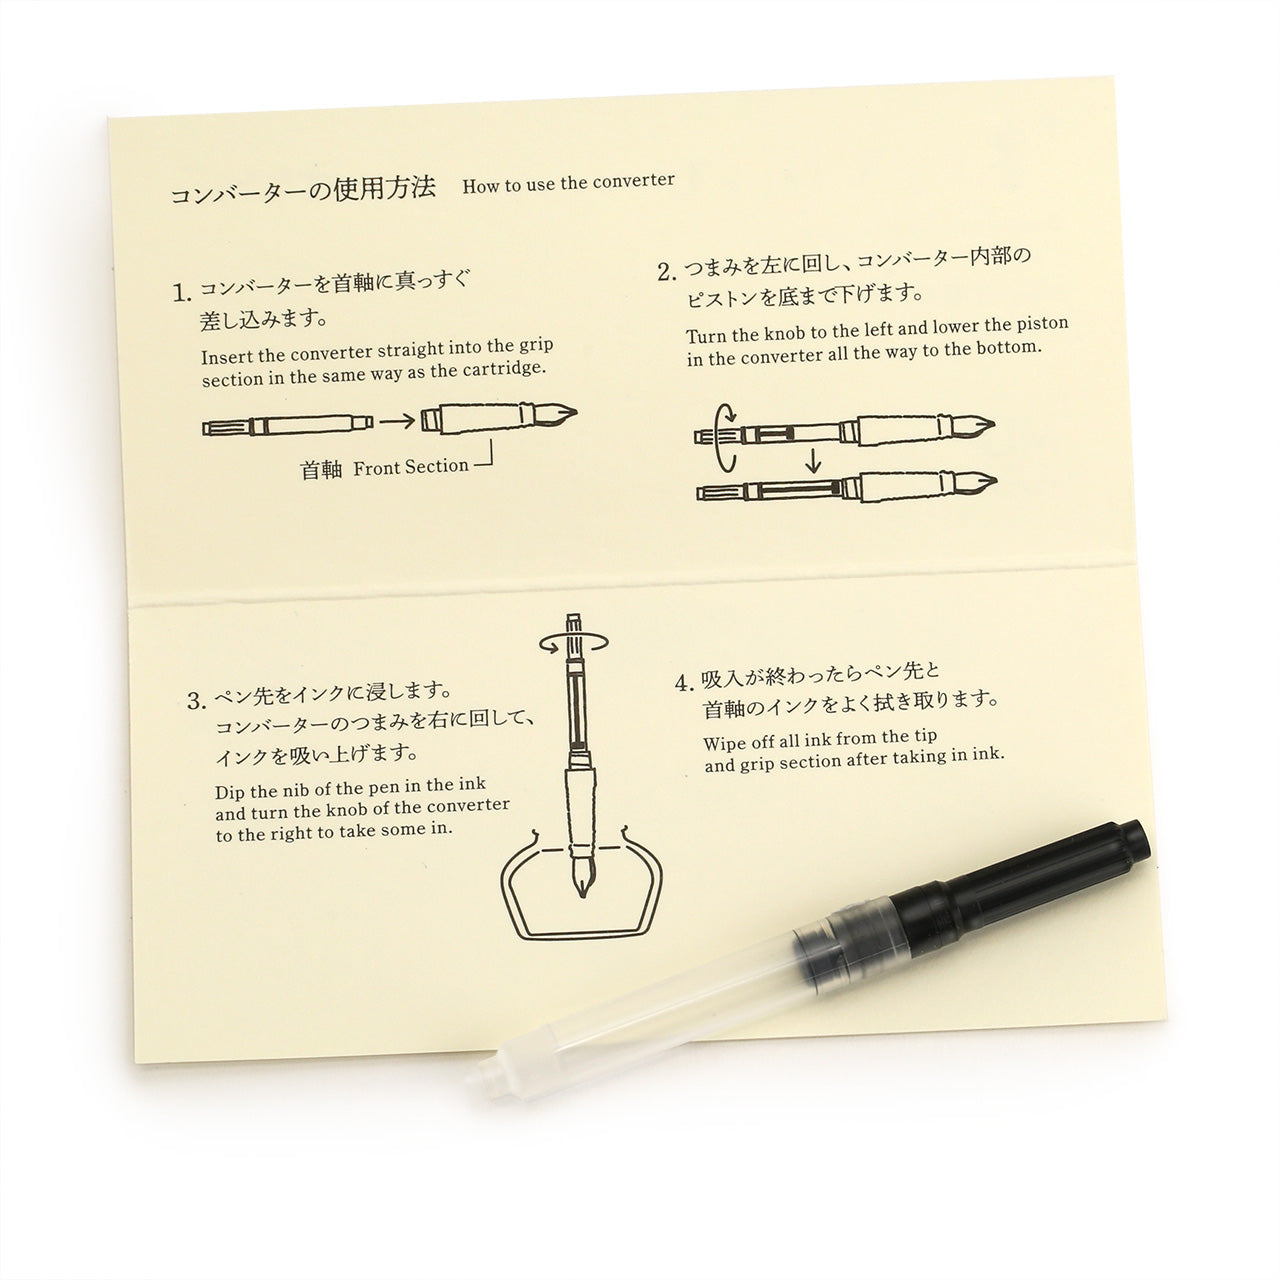 Midori converter for fountain pen on cream coloured card